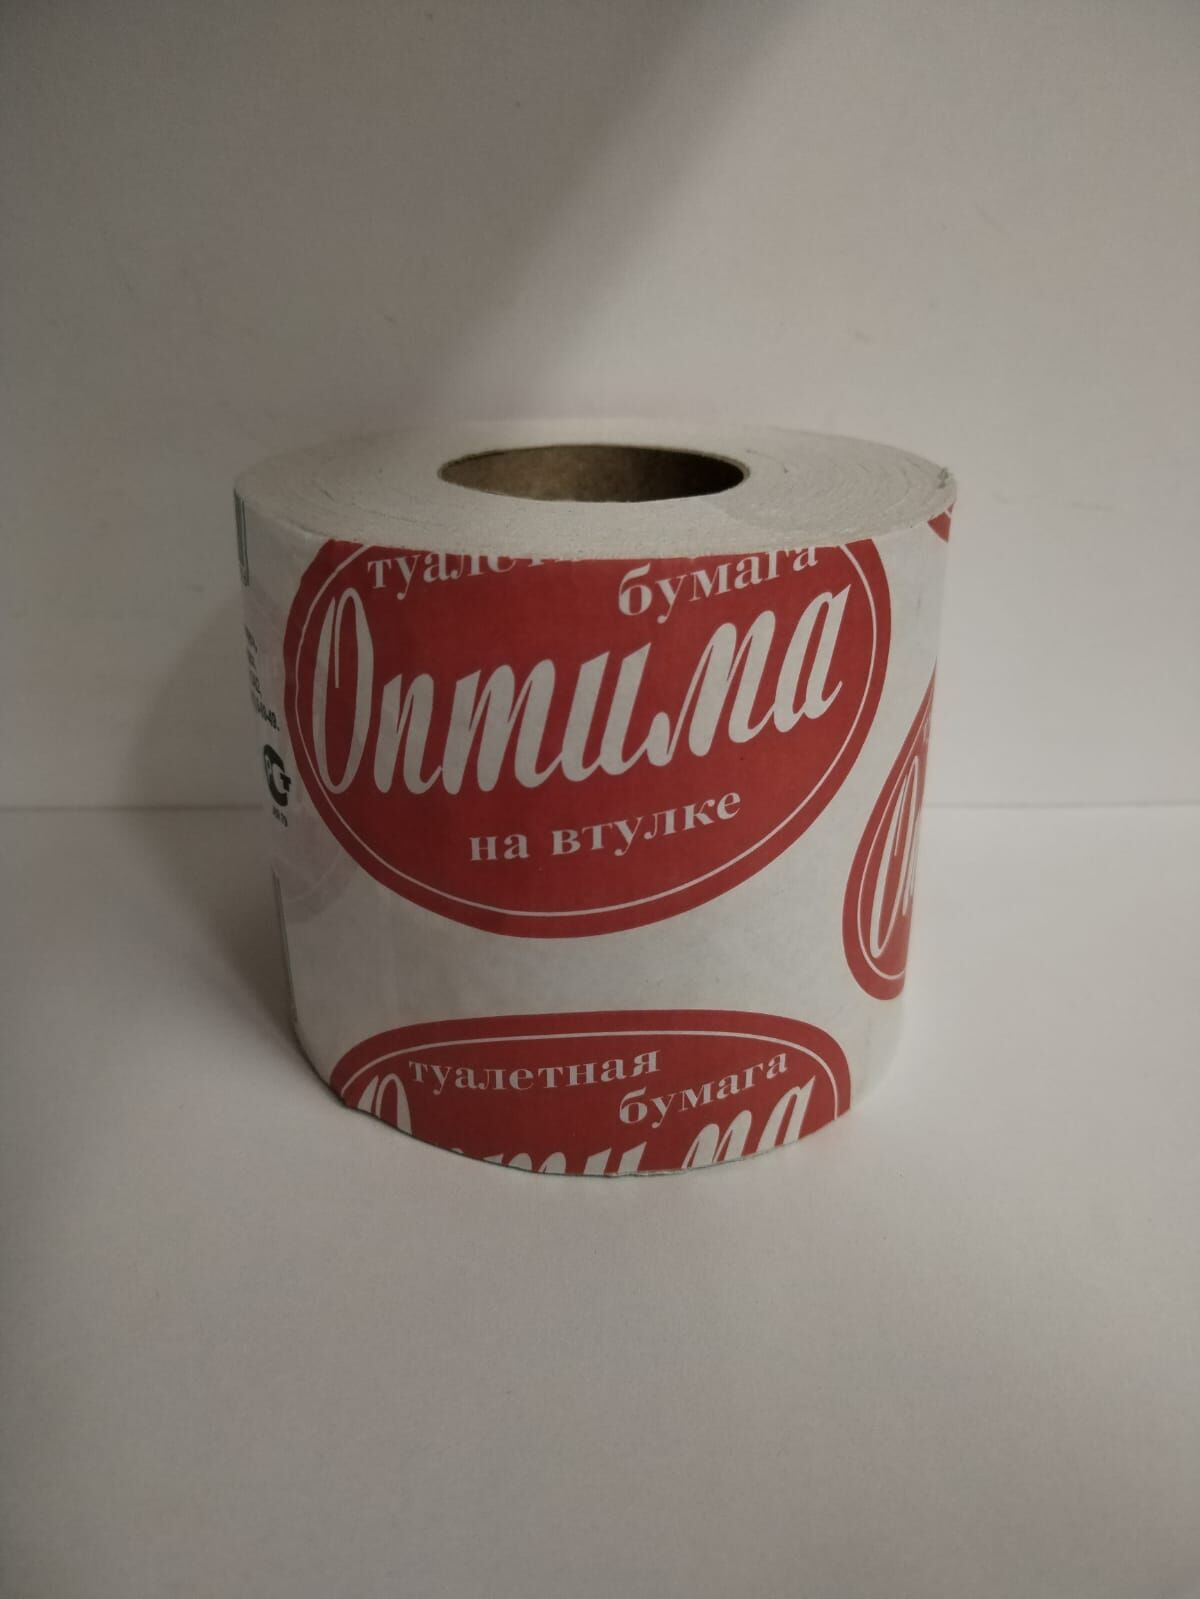 Туалетная бумага "Оптима"на втулке.